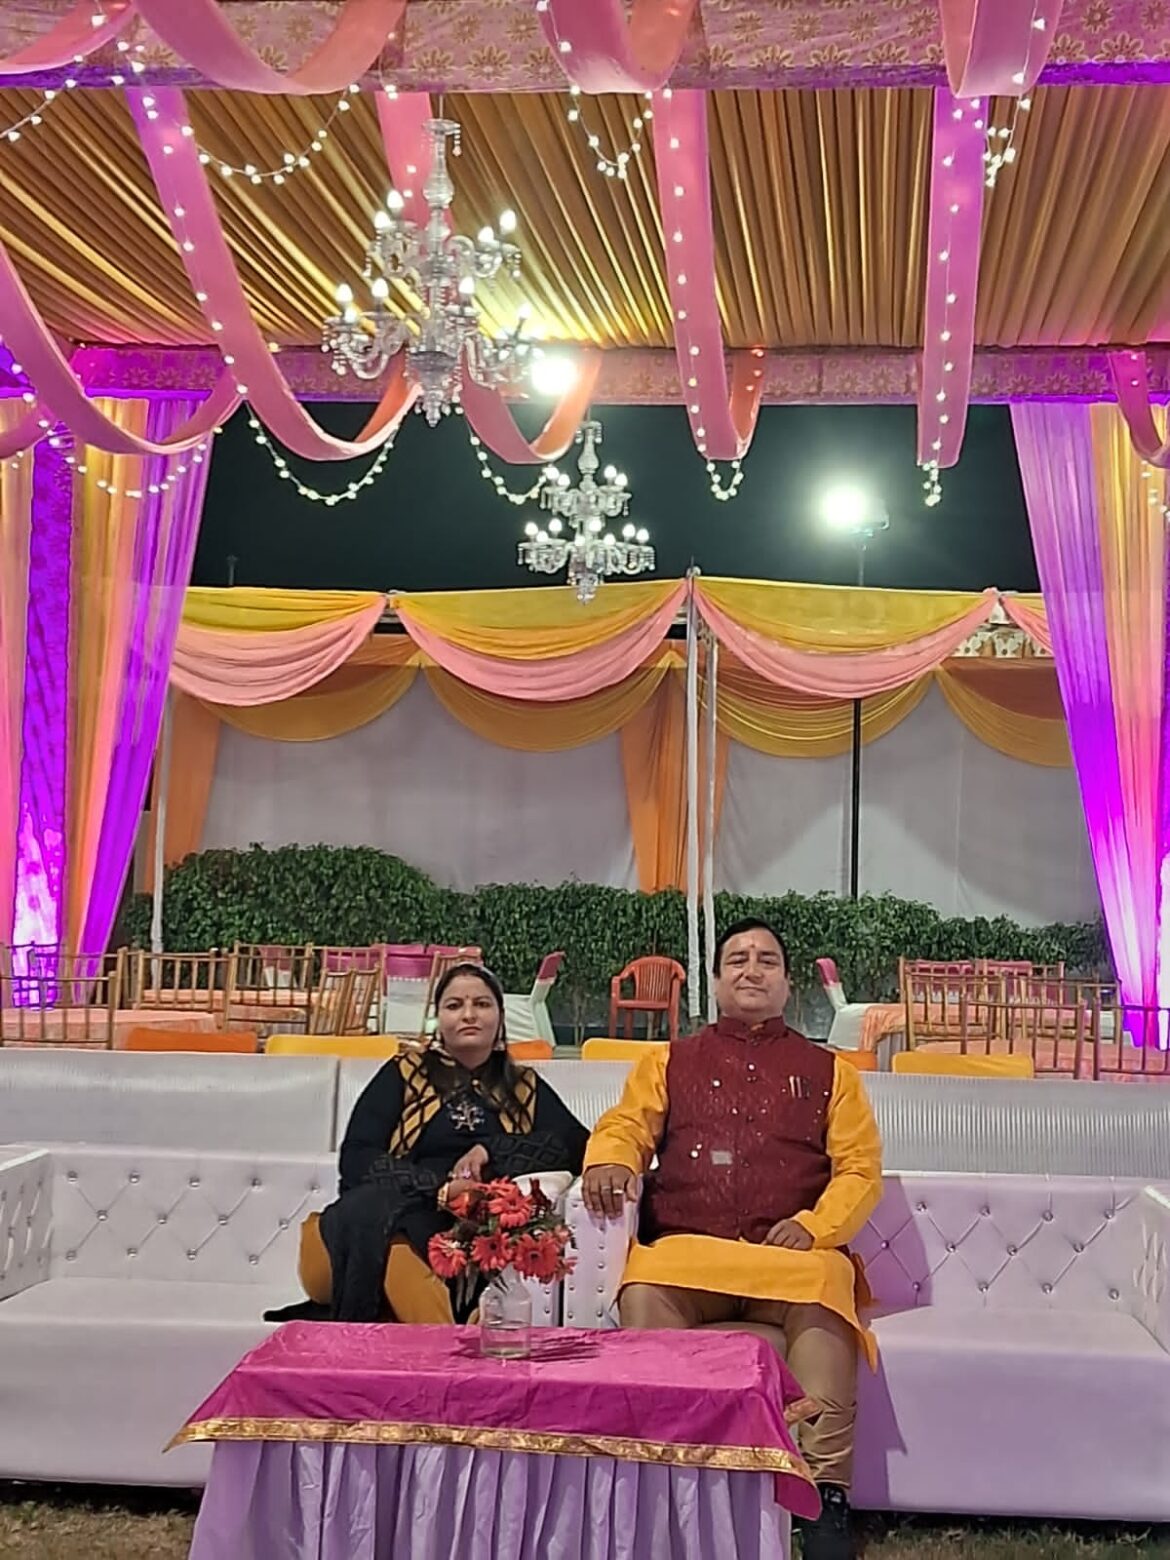 दूरदर्शन एंकर शिवानी नेगी के विवाह समारोह में पहुंचे उत्तराखंड ज्योतिष रत्न,पूरे समारोह में उनके मुस्कराते हुए मौन रहने से लगे तरह -तरह के कयास